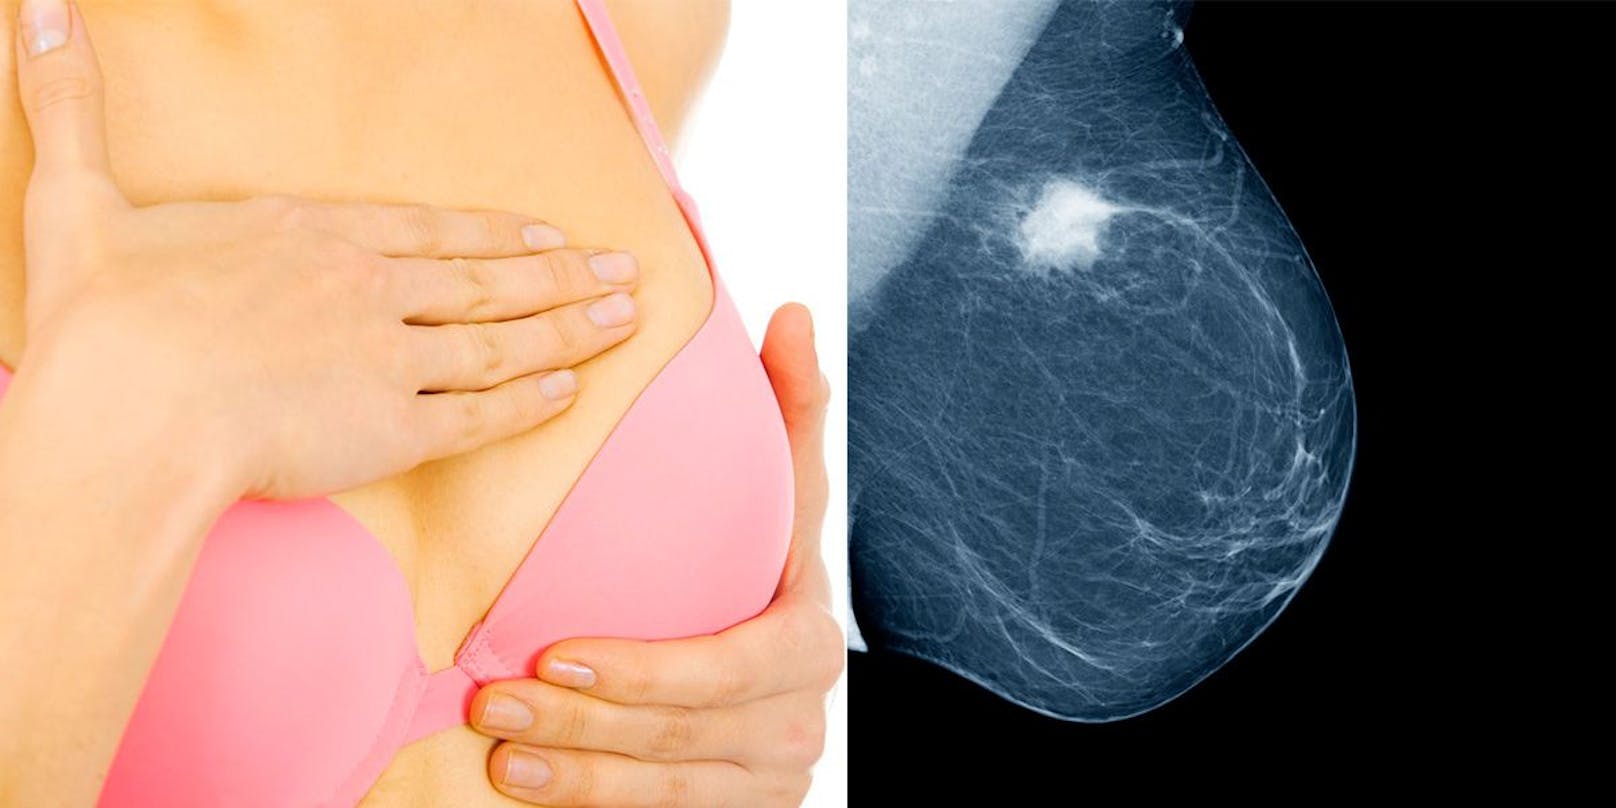 Brustkrebs ist die häufigste Krebserkrankung der Frau mit 5.000 bis 5.500 neuen Fällen pro Jahr in Österreich.